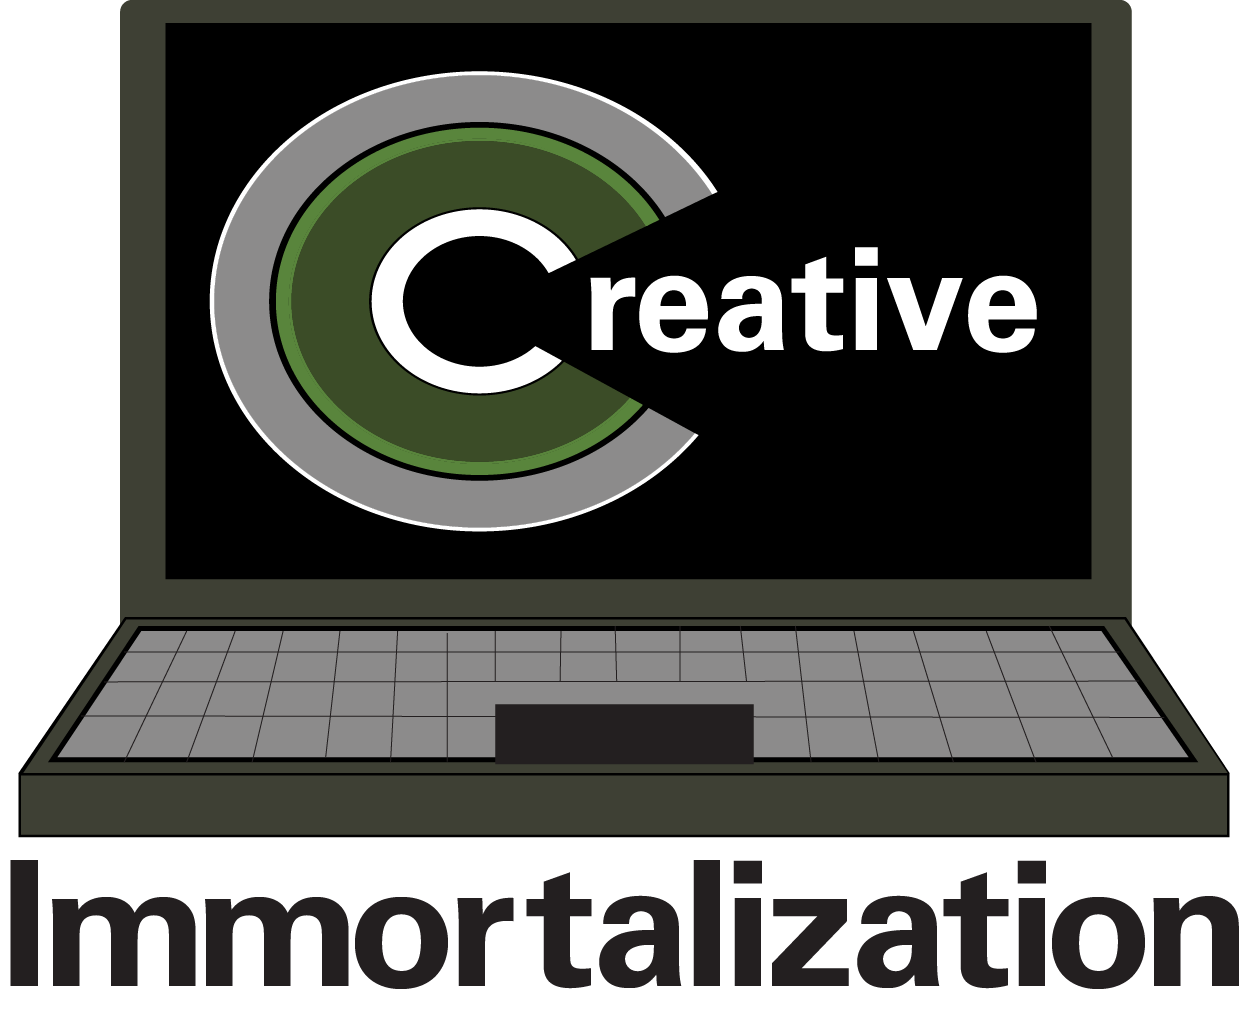 Creative Immortalization Media